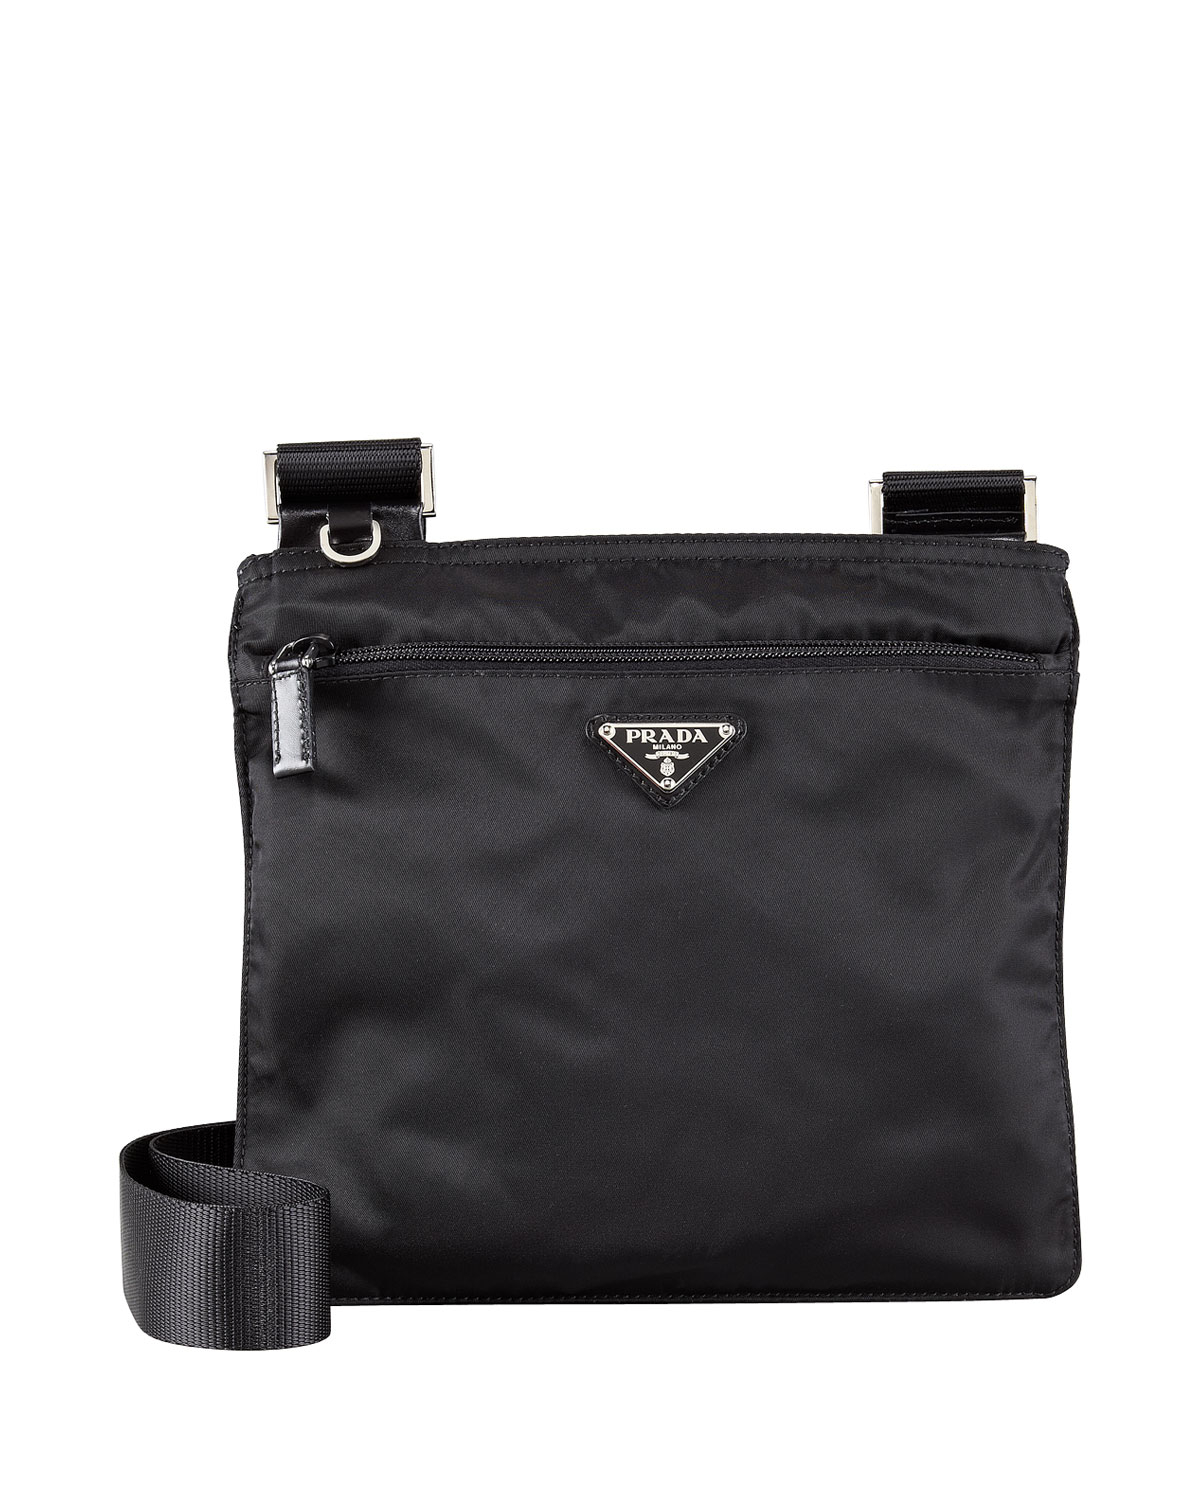 Prada Vela Crossbody Messenger Bag in Black (nero) | Lyst